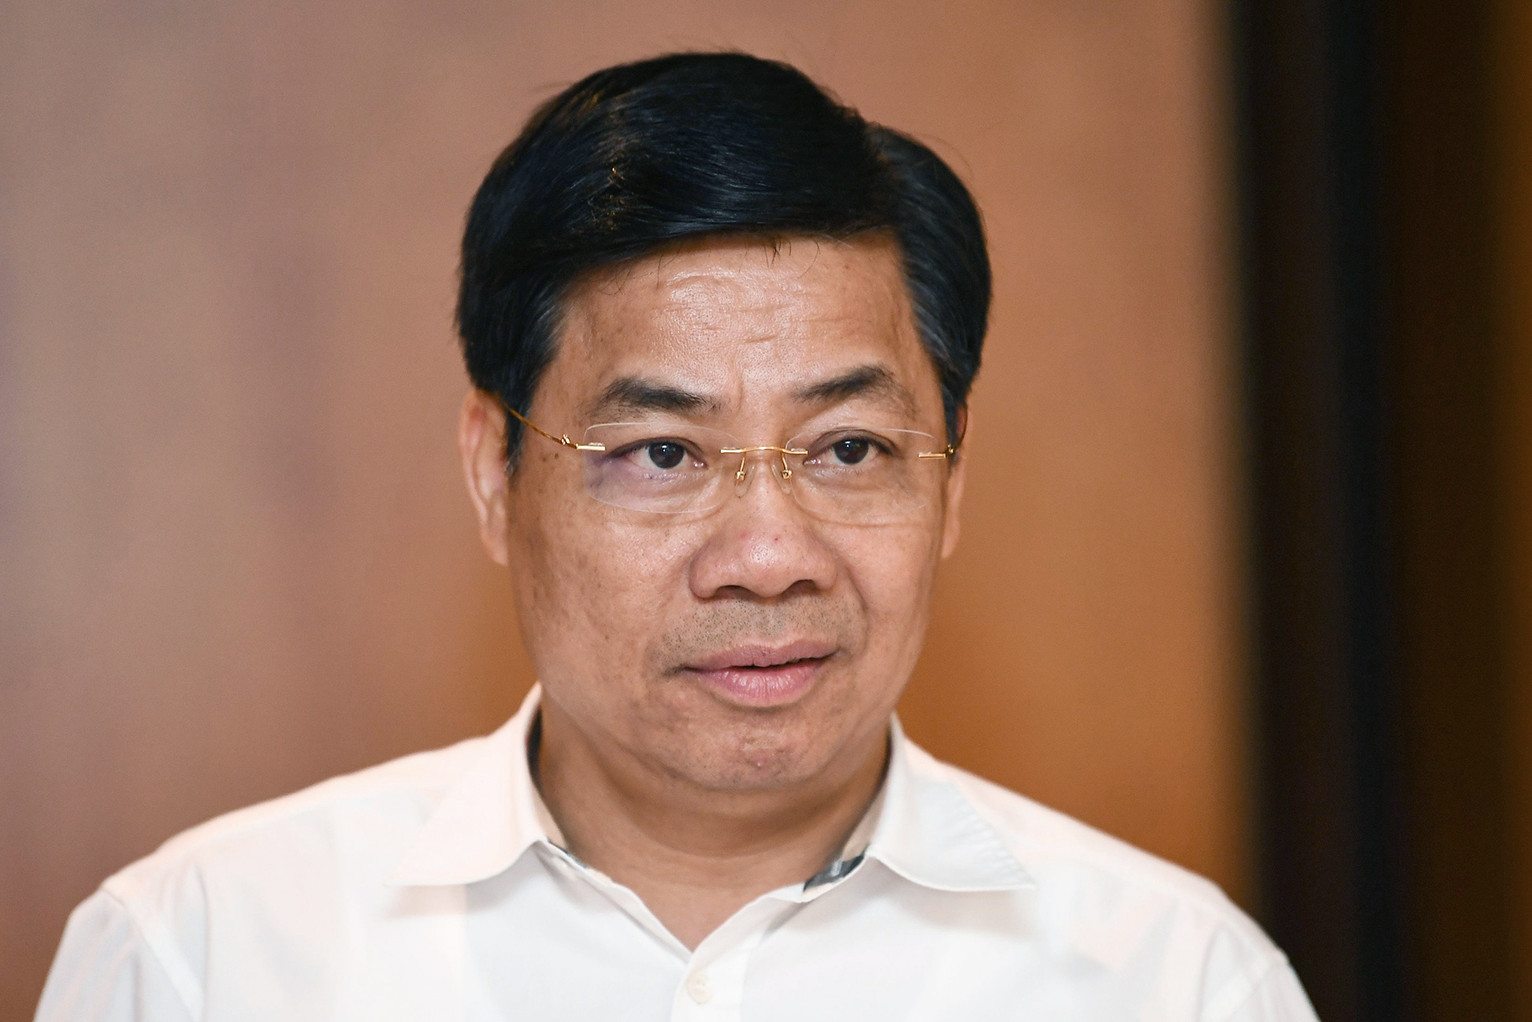 Bí thư Bắc Giang Dương Văn Thái bị tạm đình chỉ nhiệm vụ Đại biểu Quốc hội